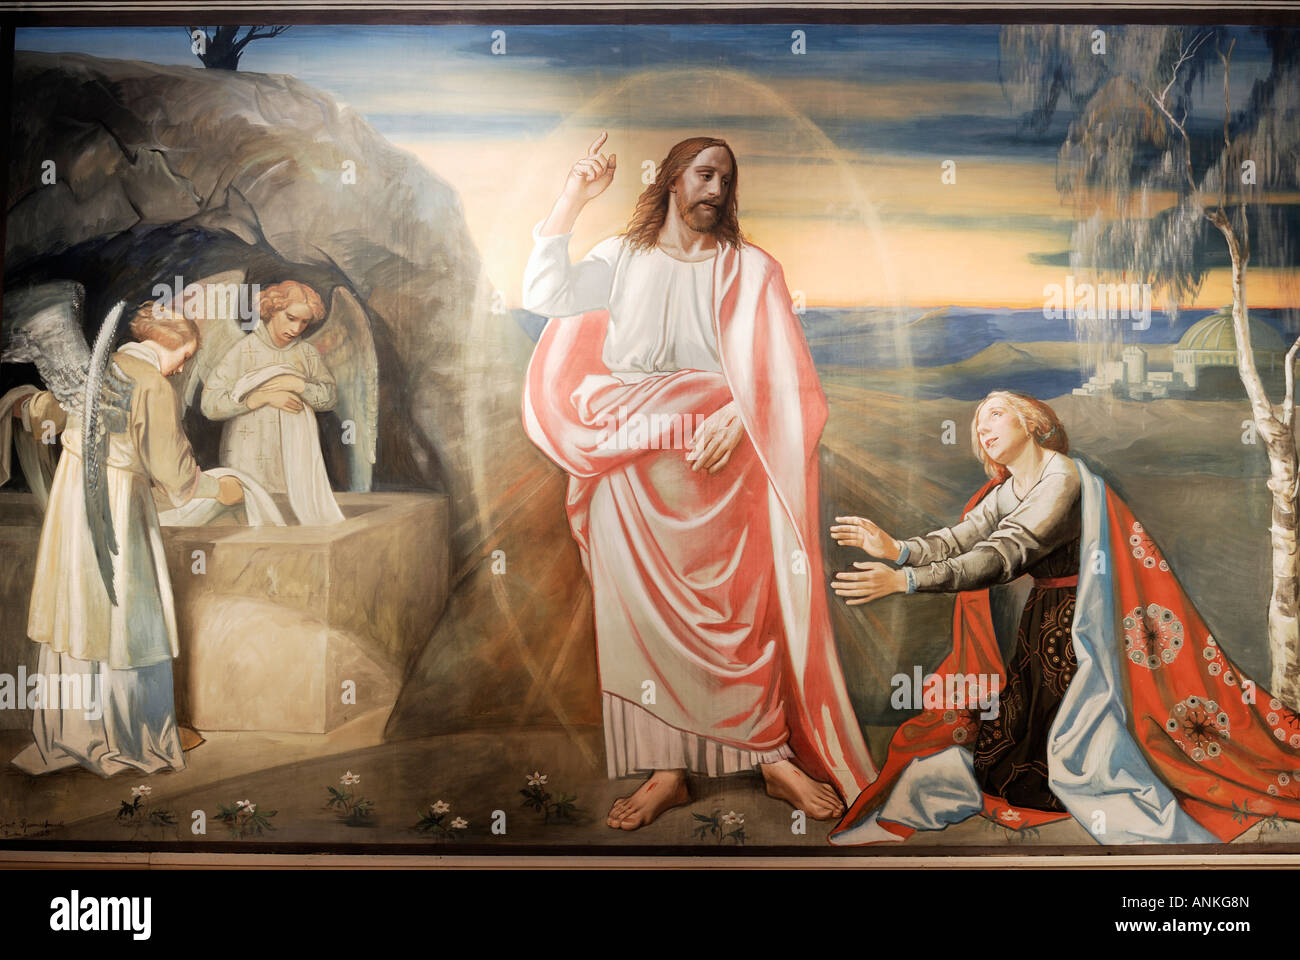 La peinture murale de Jésus à la résurrection Banque D'Images